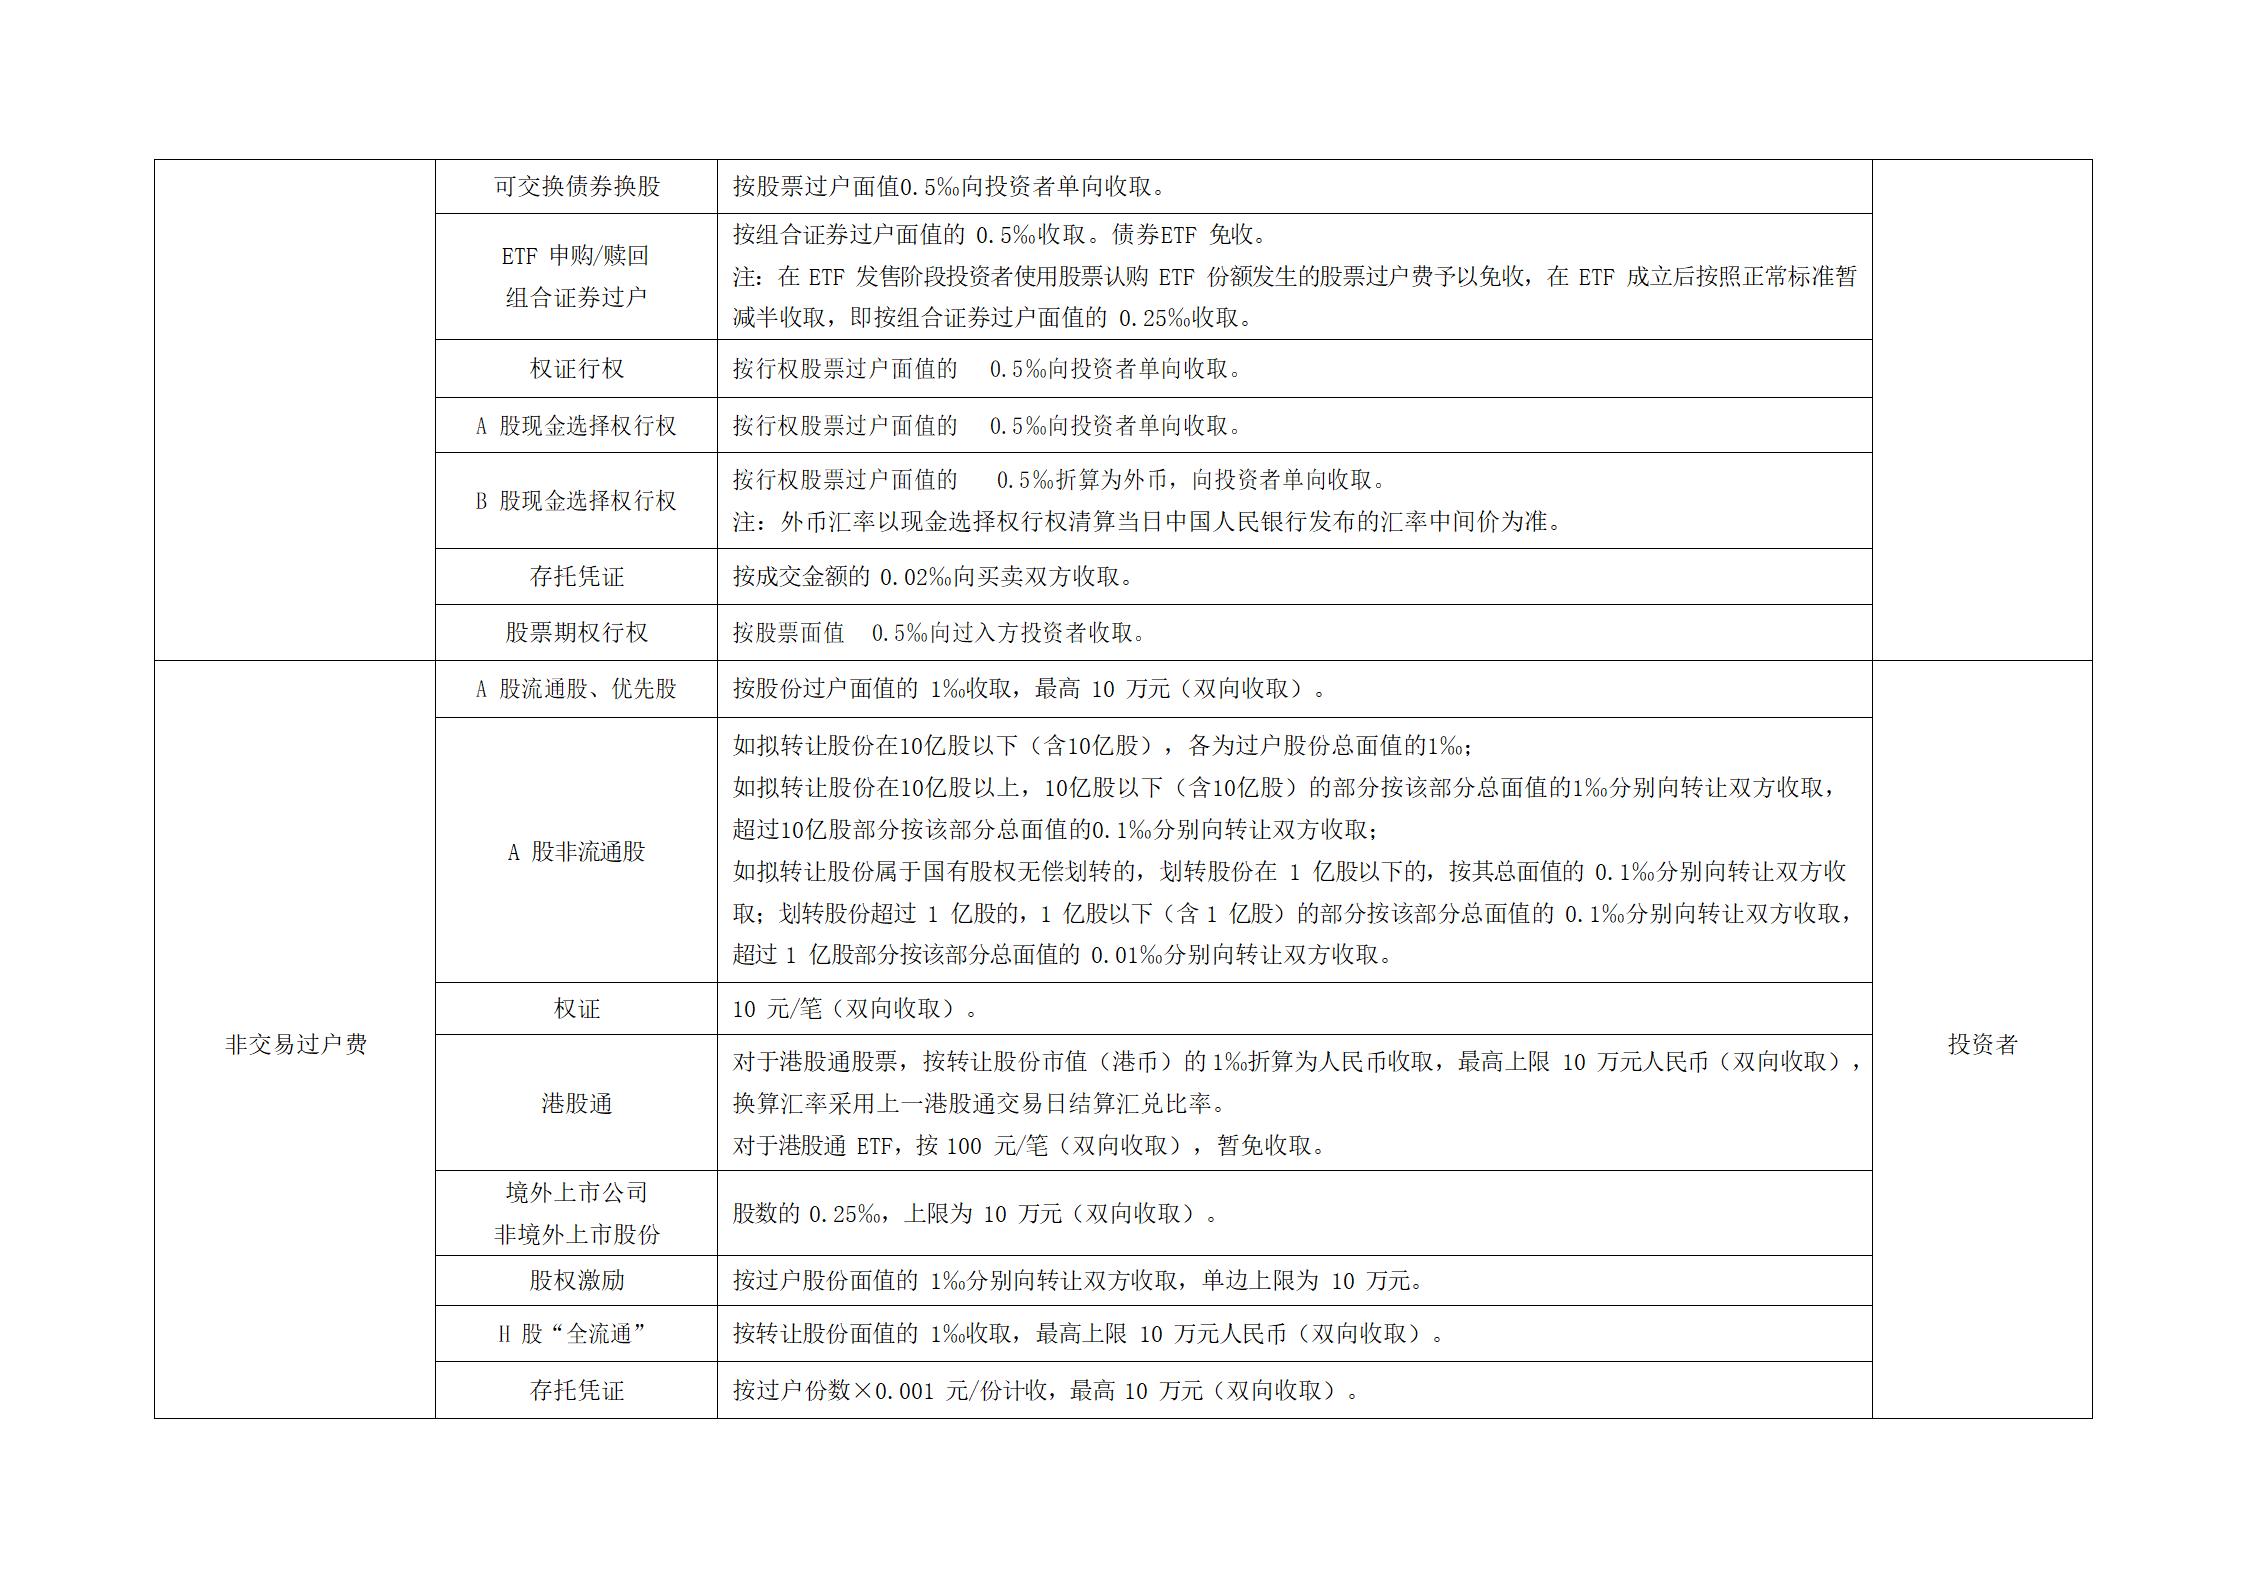 深圳市场证券登记结算业务收费及代收税费一览表 (1)_04.jpg